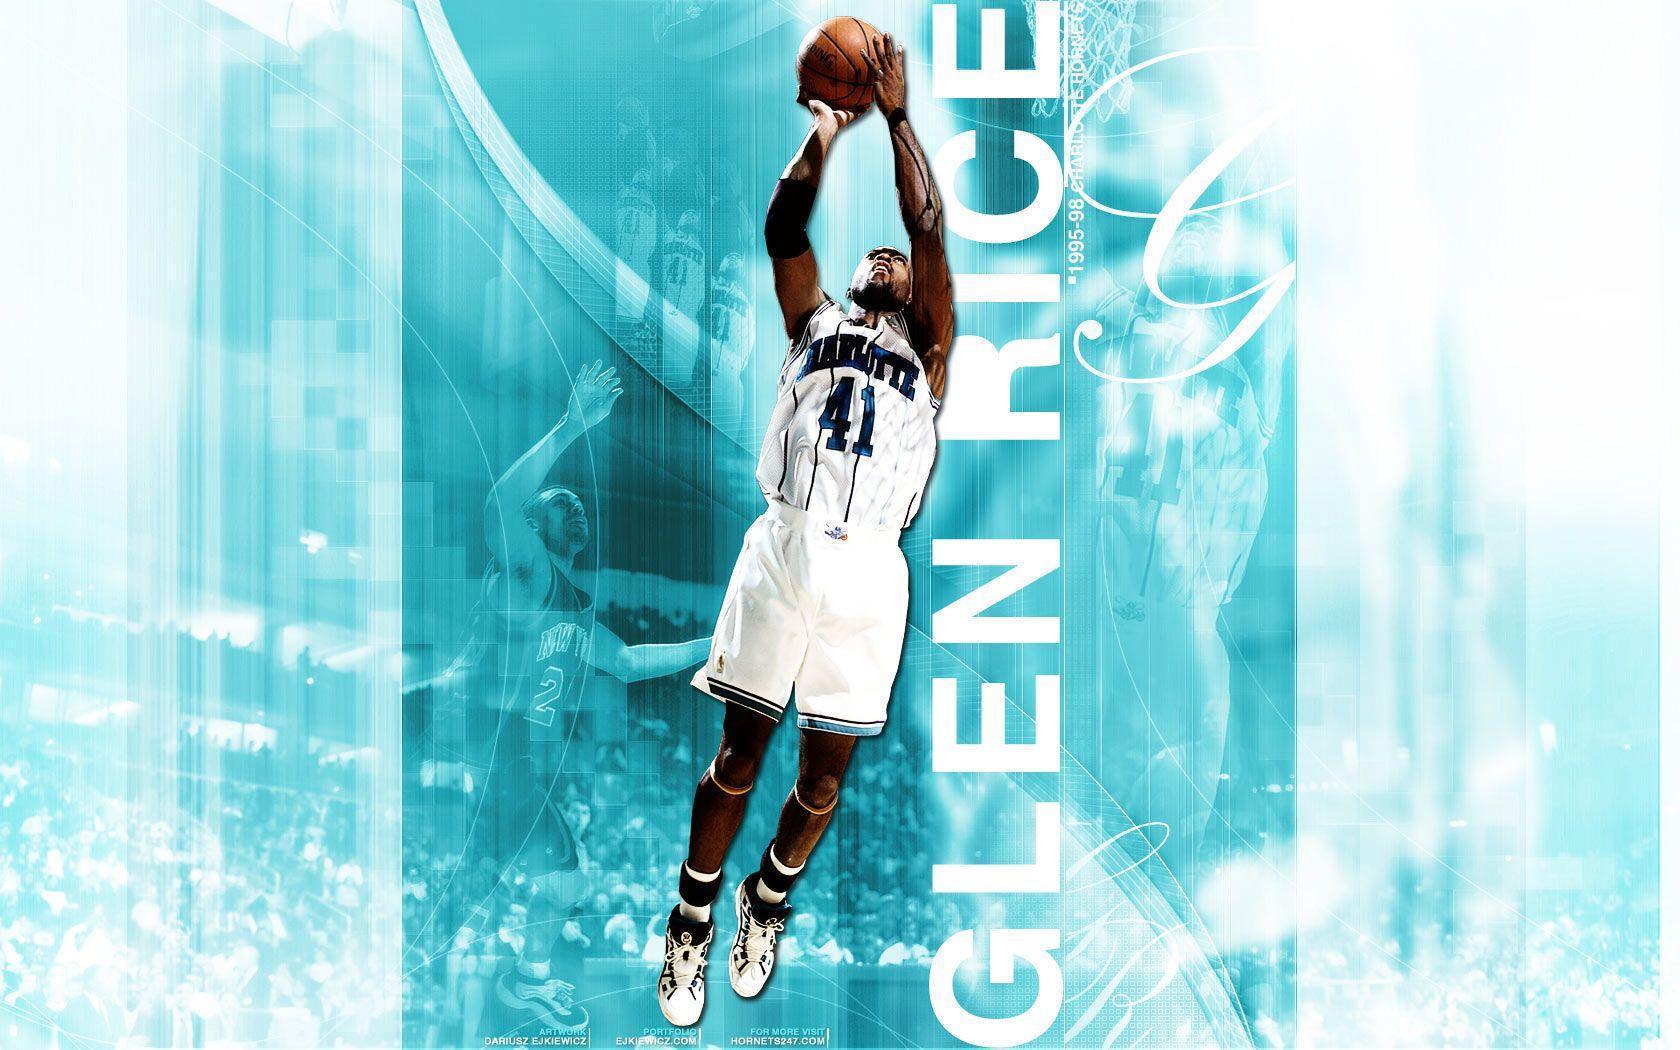 Charlotte Hornets Wallpaper iPhone HD - 2023 Basketball Wallpaper